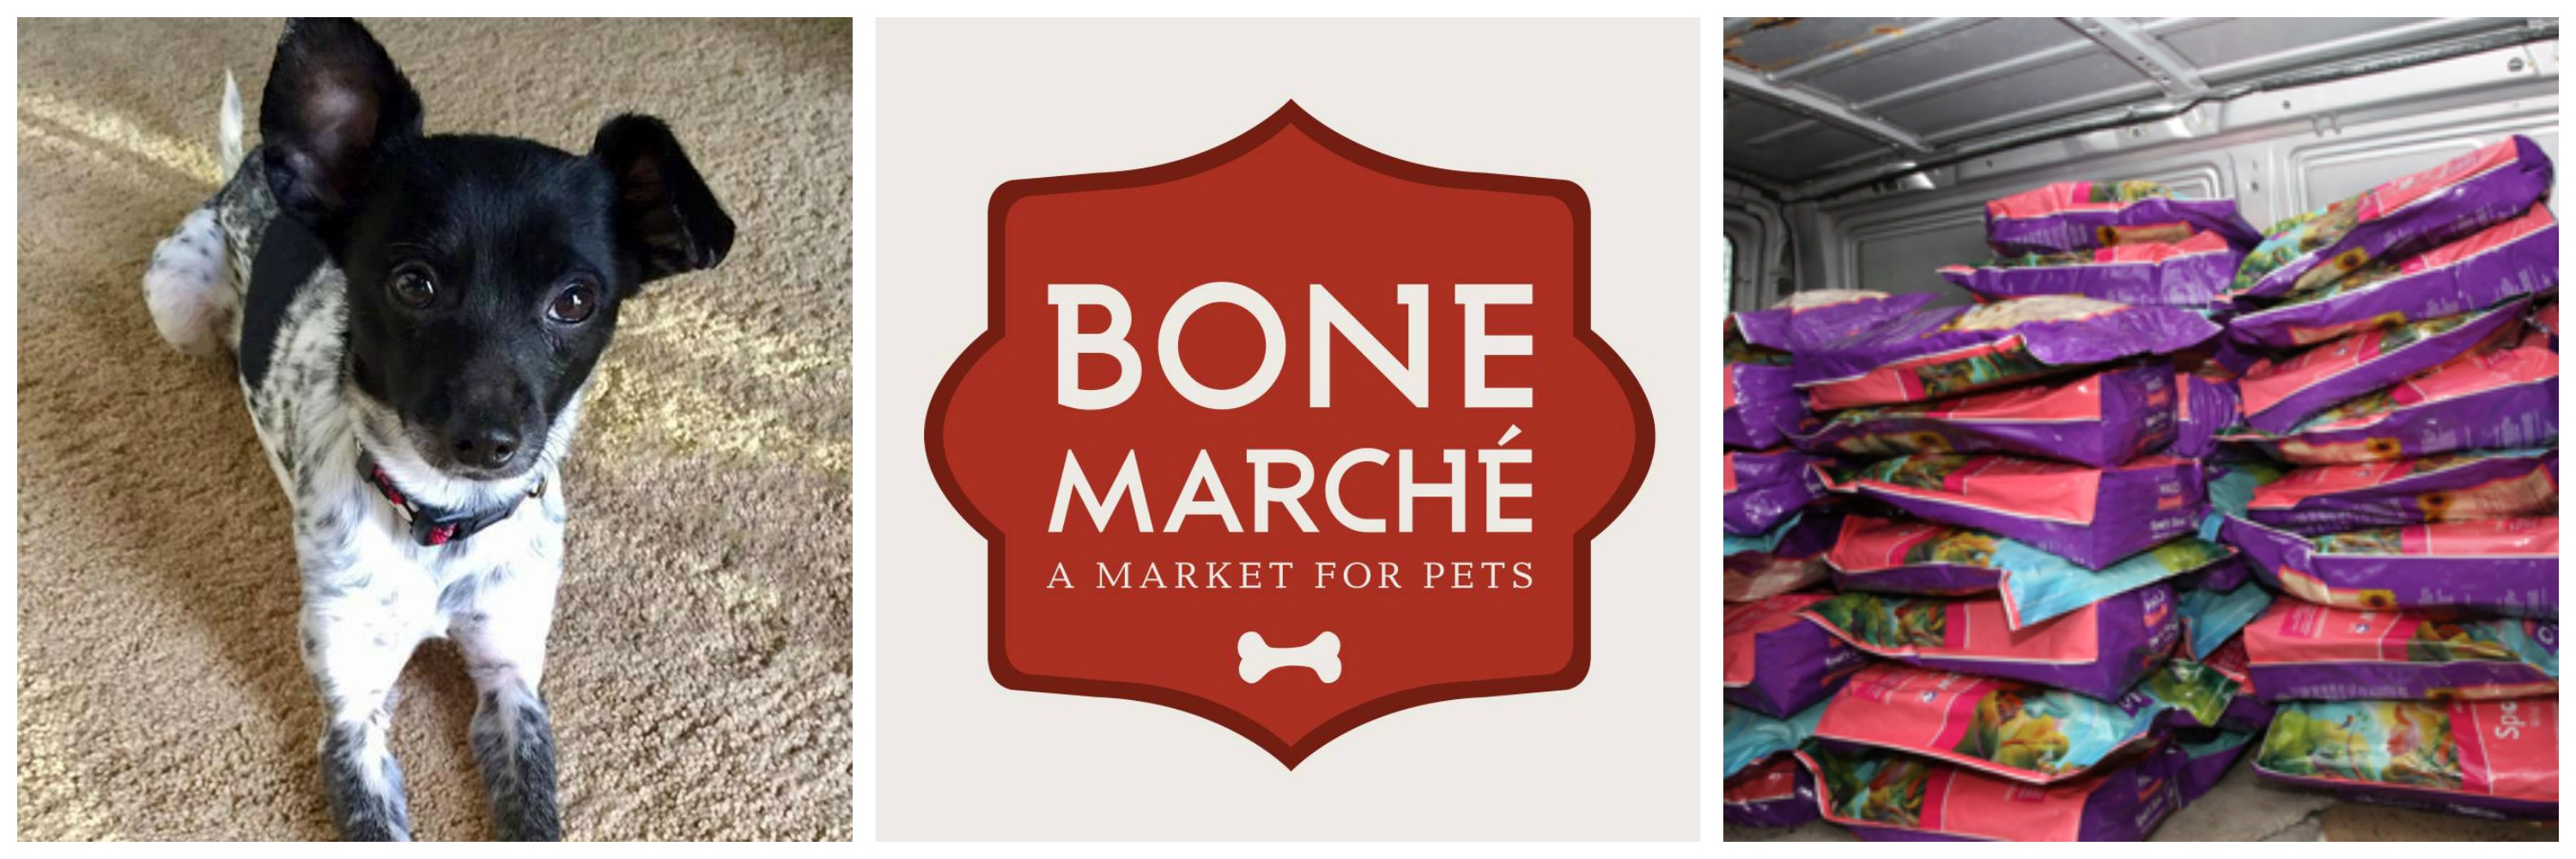 Bone Marche, Halo Pets and Good Karma Minneapolis